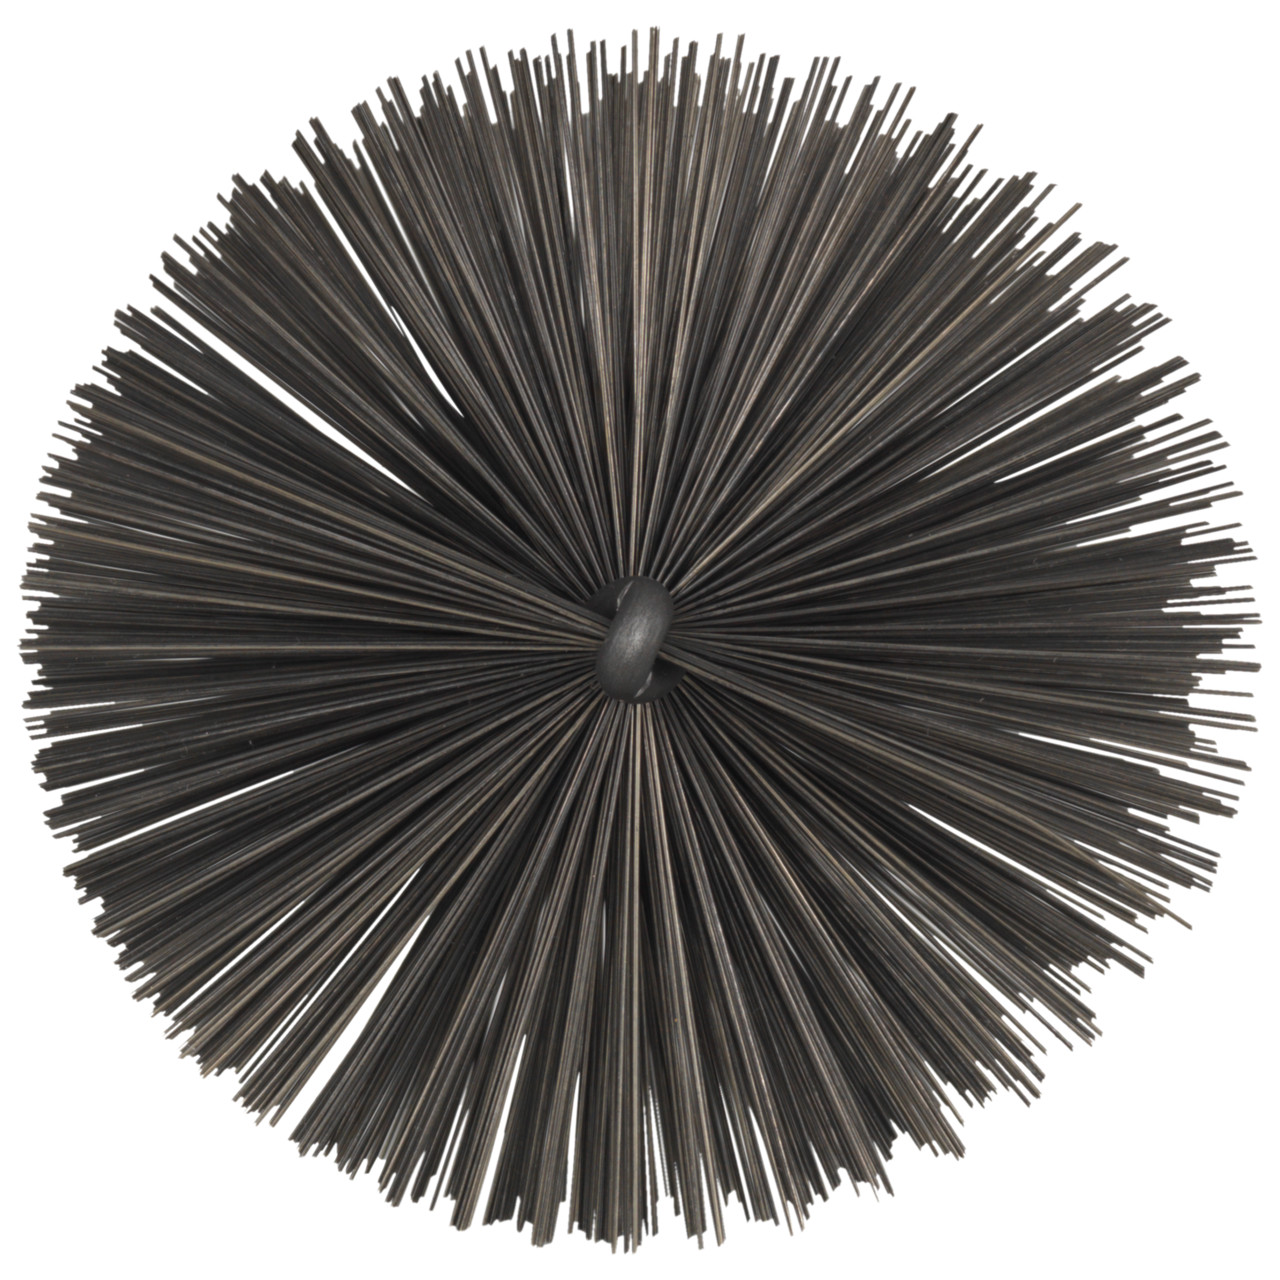 Tyrolit Brosse tubulaire avec filetage extérieur DxGE-I 30xW1/2-160 Pour l'acier, forme : 18ROGDG - (brosse tubulaire), art. 34203602